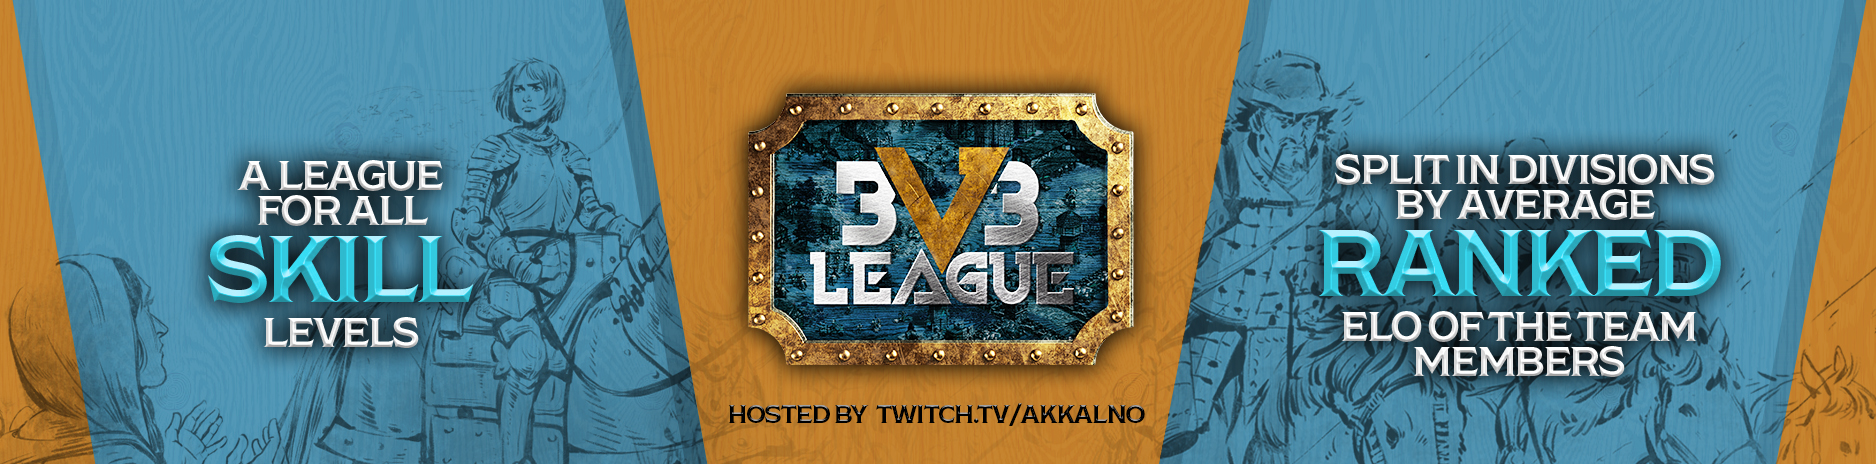 3v3_league_banner.jpg